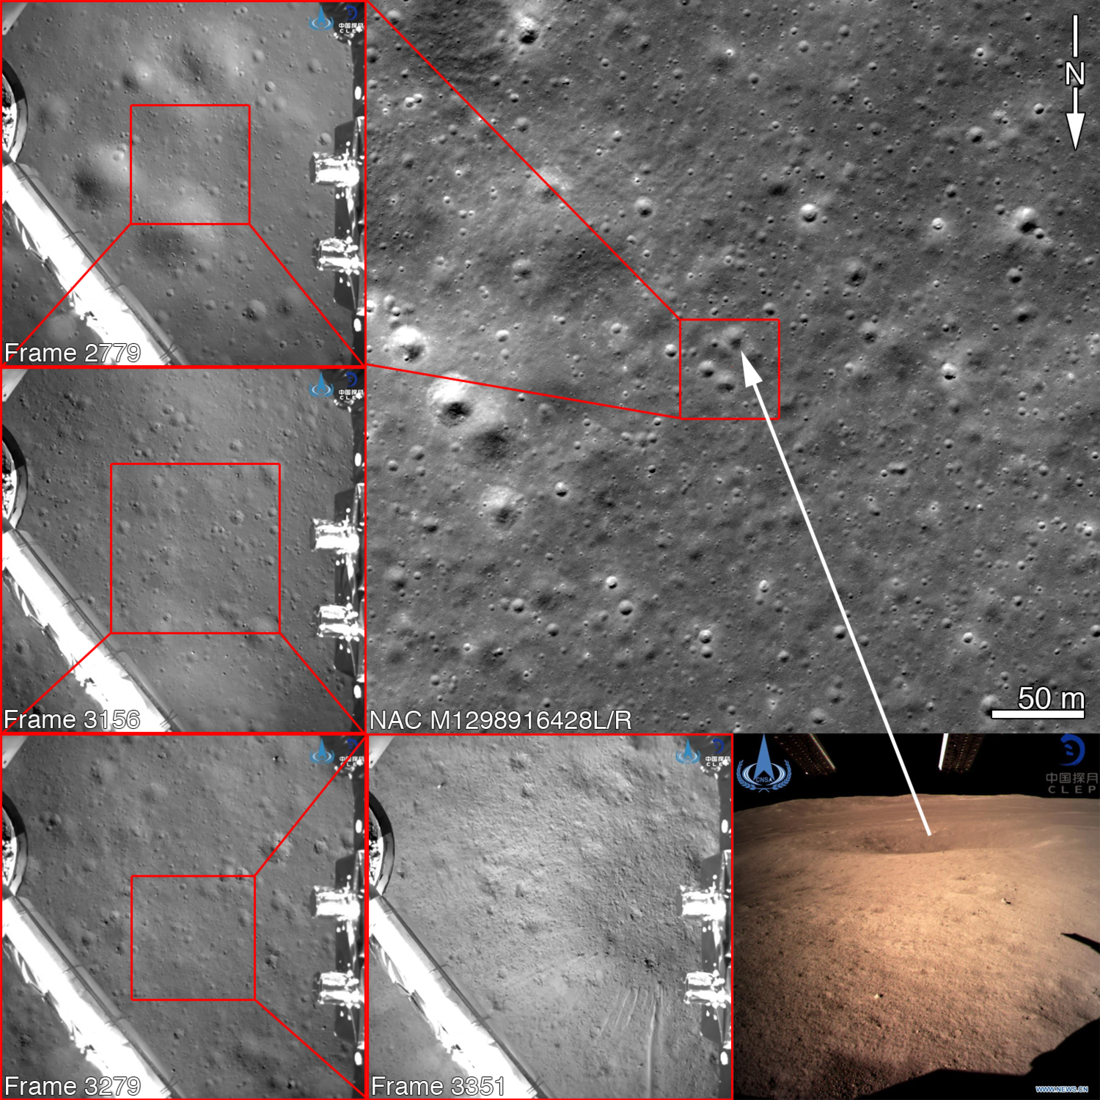 Lander locater images